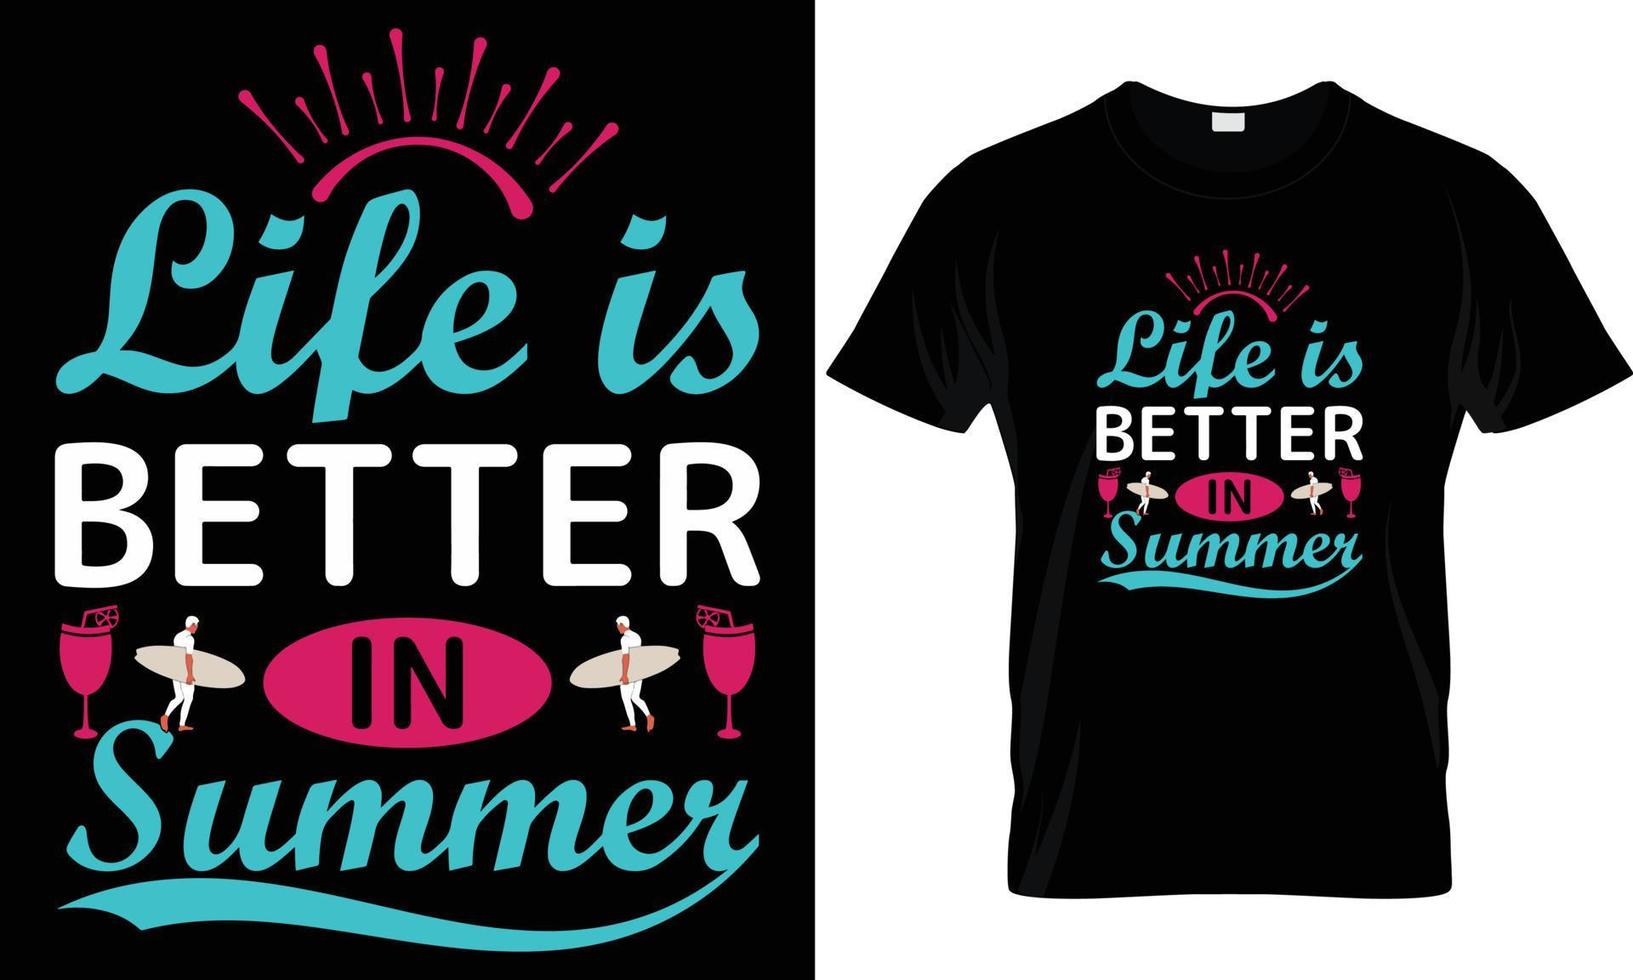 verano t - camisa diseño vector